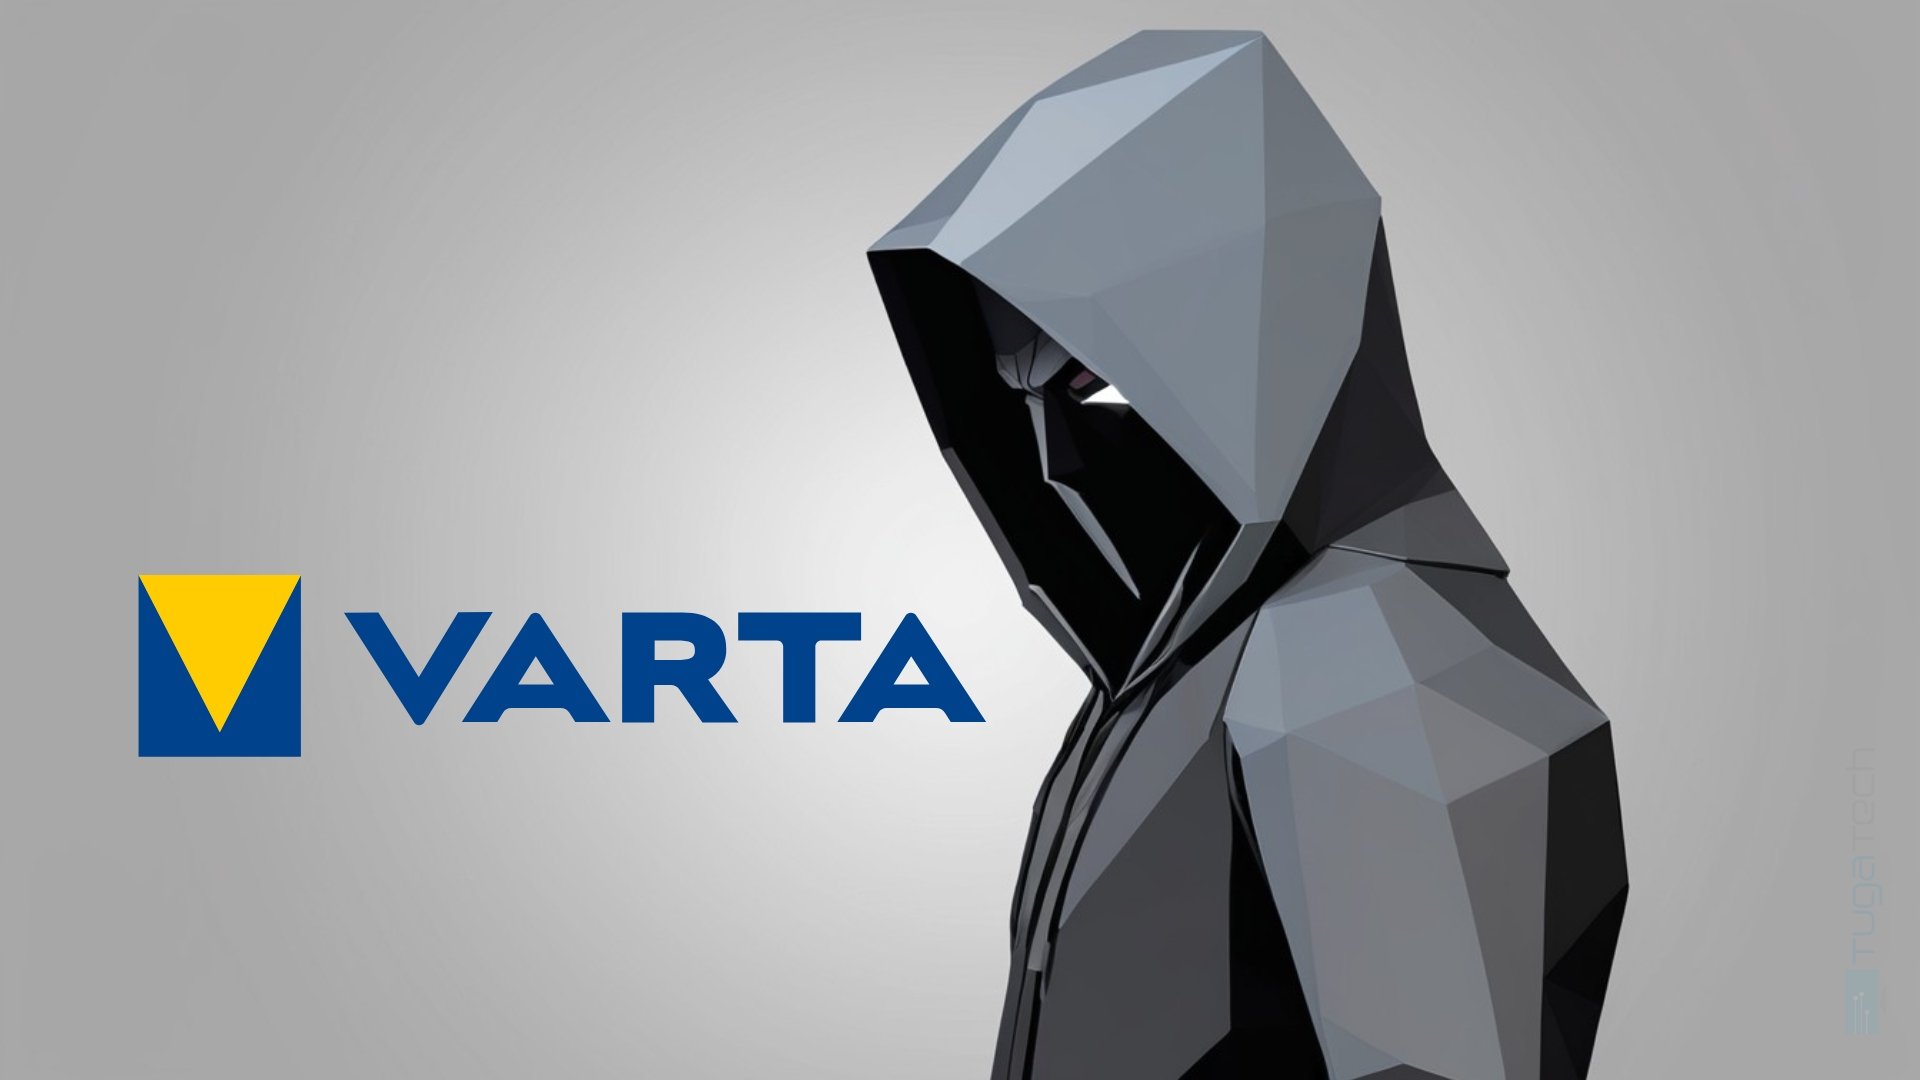 Fabricante de baterias Varta suspende produção após ataque informático